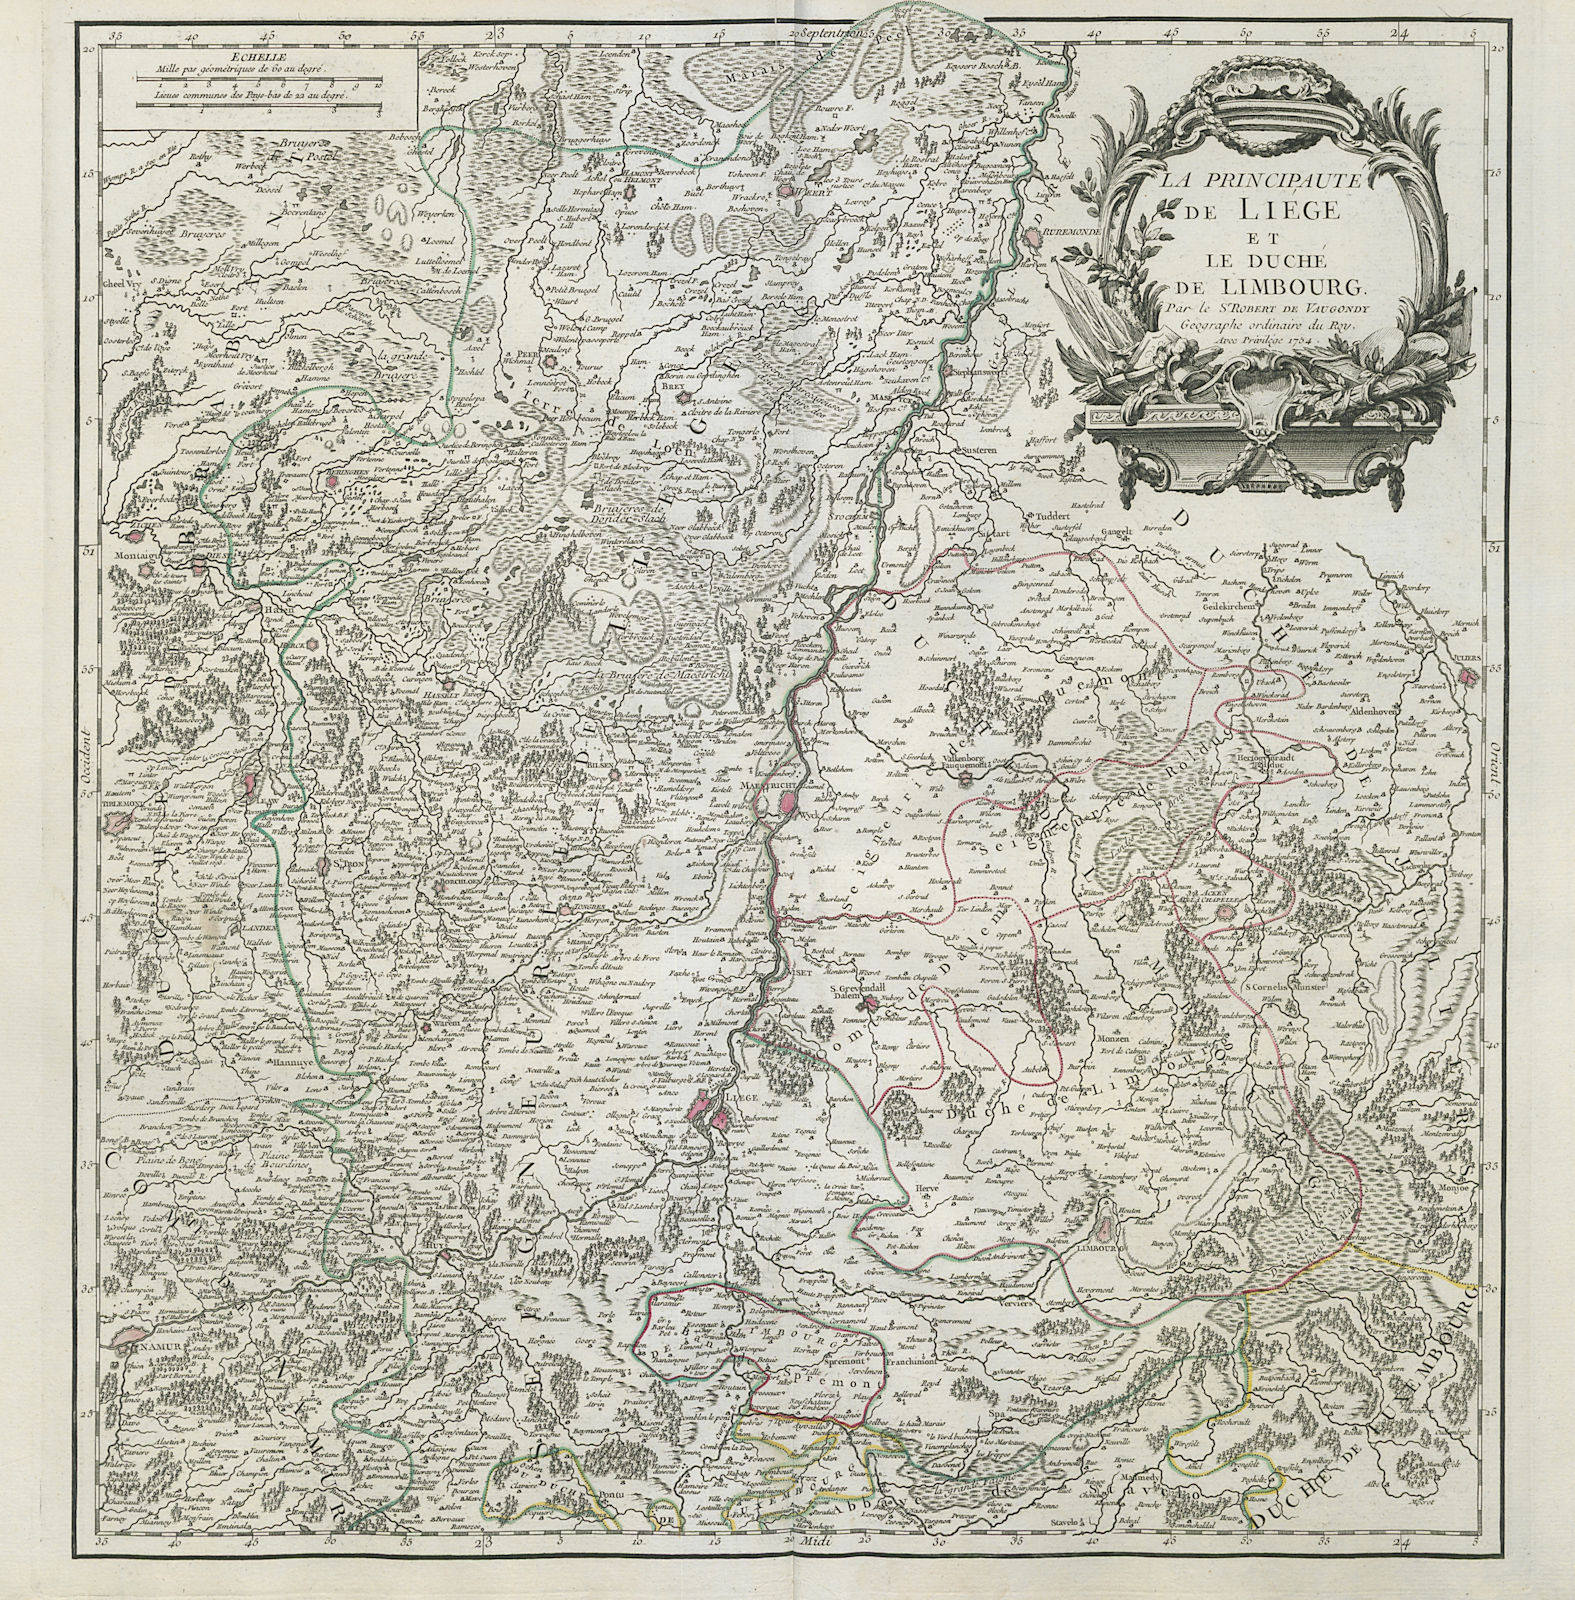 "La Principauté de Liege et le Duché de Limbourg". Belgium NL. VAUGONDY 1754 map